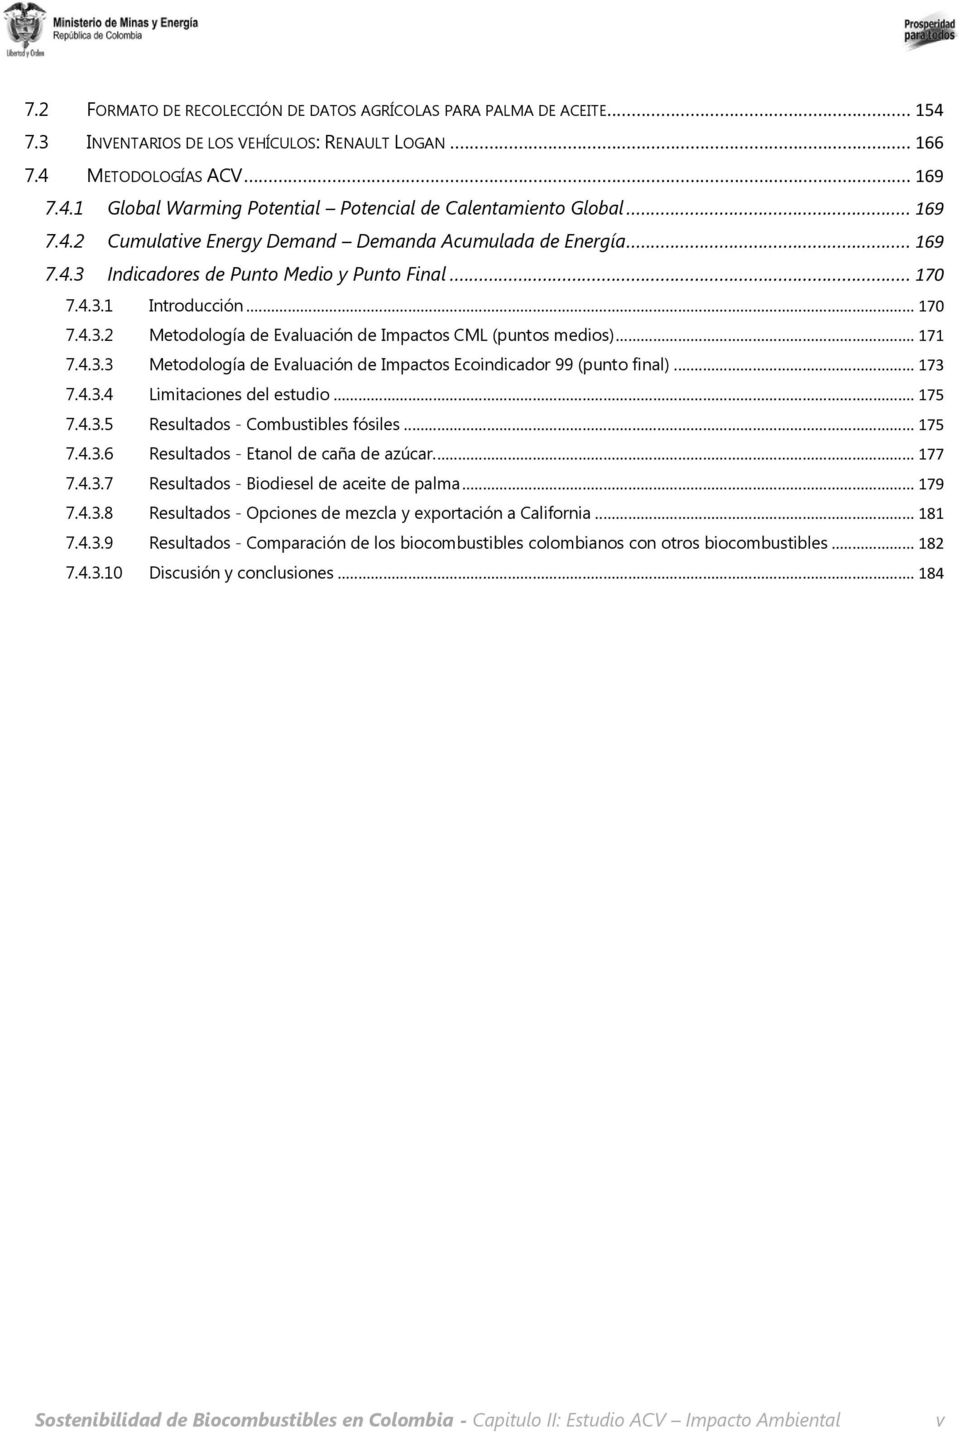 .. 171 7.4.3.3 Metodología de Evaluación de Impactos Ecoindicador 99 (punto final)... 173 7.4.3.4 Limitaciones del estudio... 175 7.4.3.5 Resultados - Combustibles fósiles... 175 7.4.3.6 Resultados - Etanol de caña de azúcar.